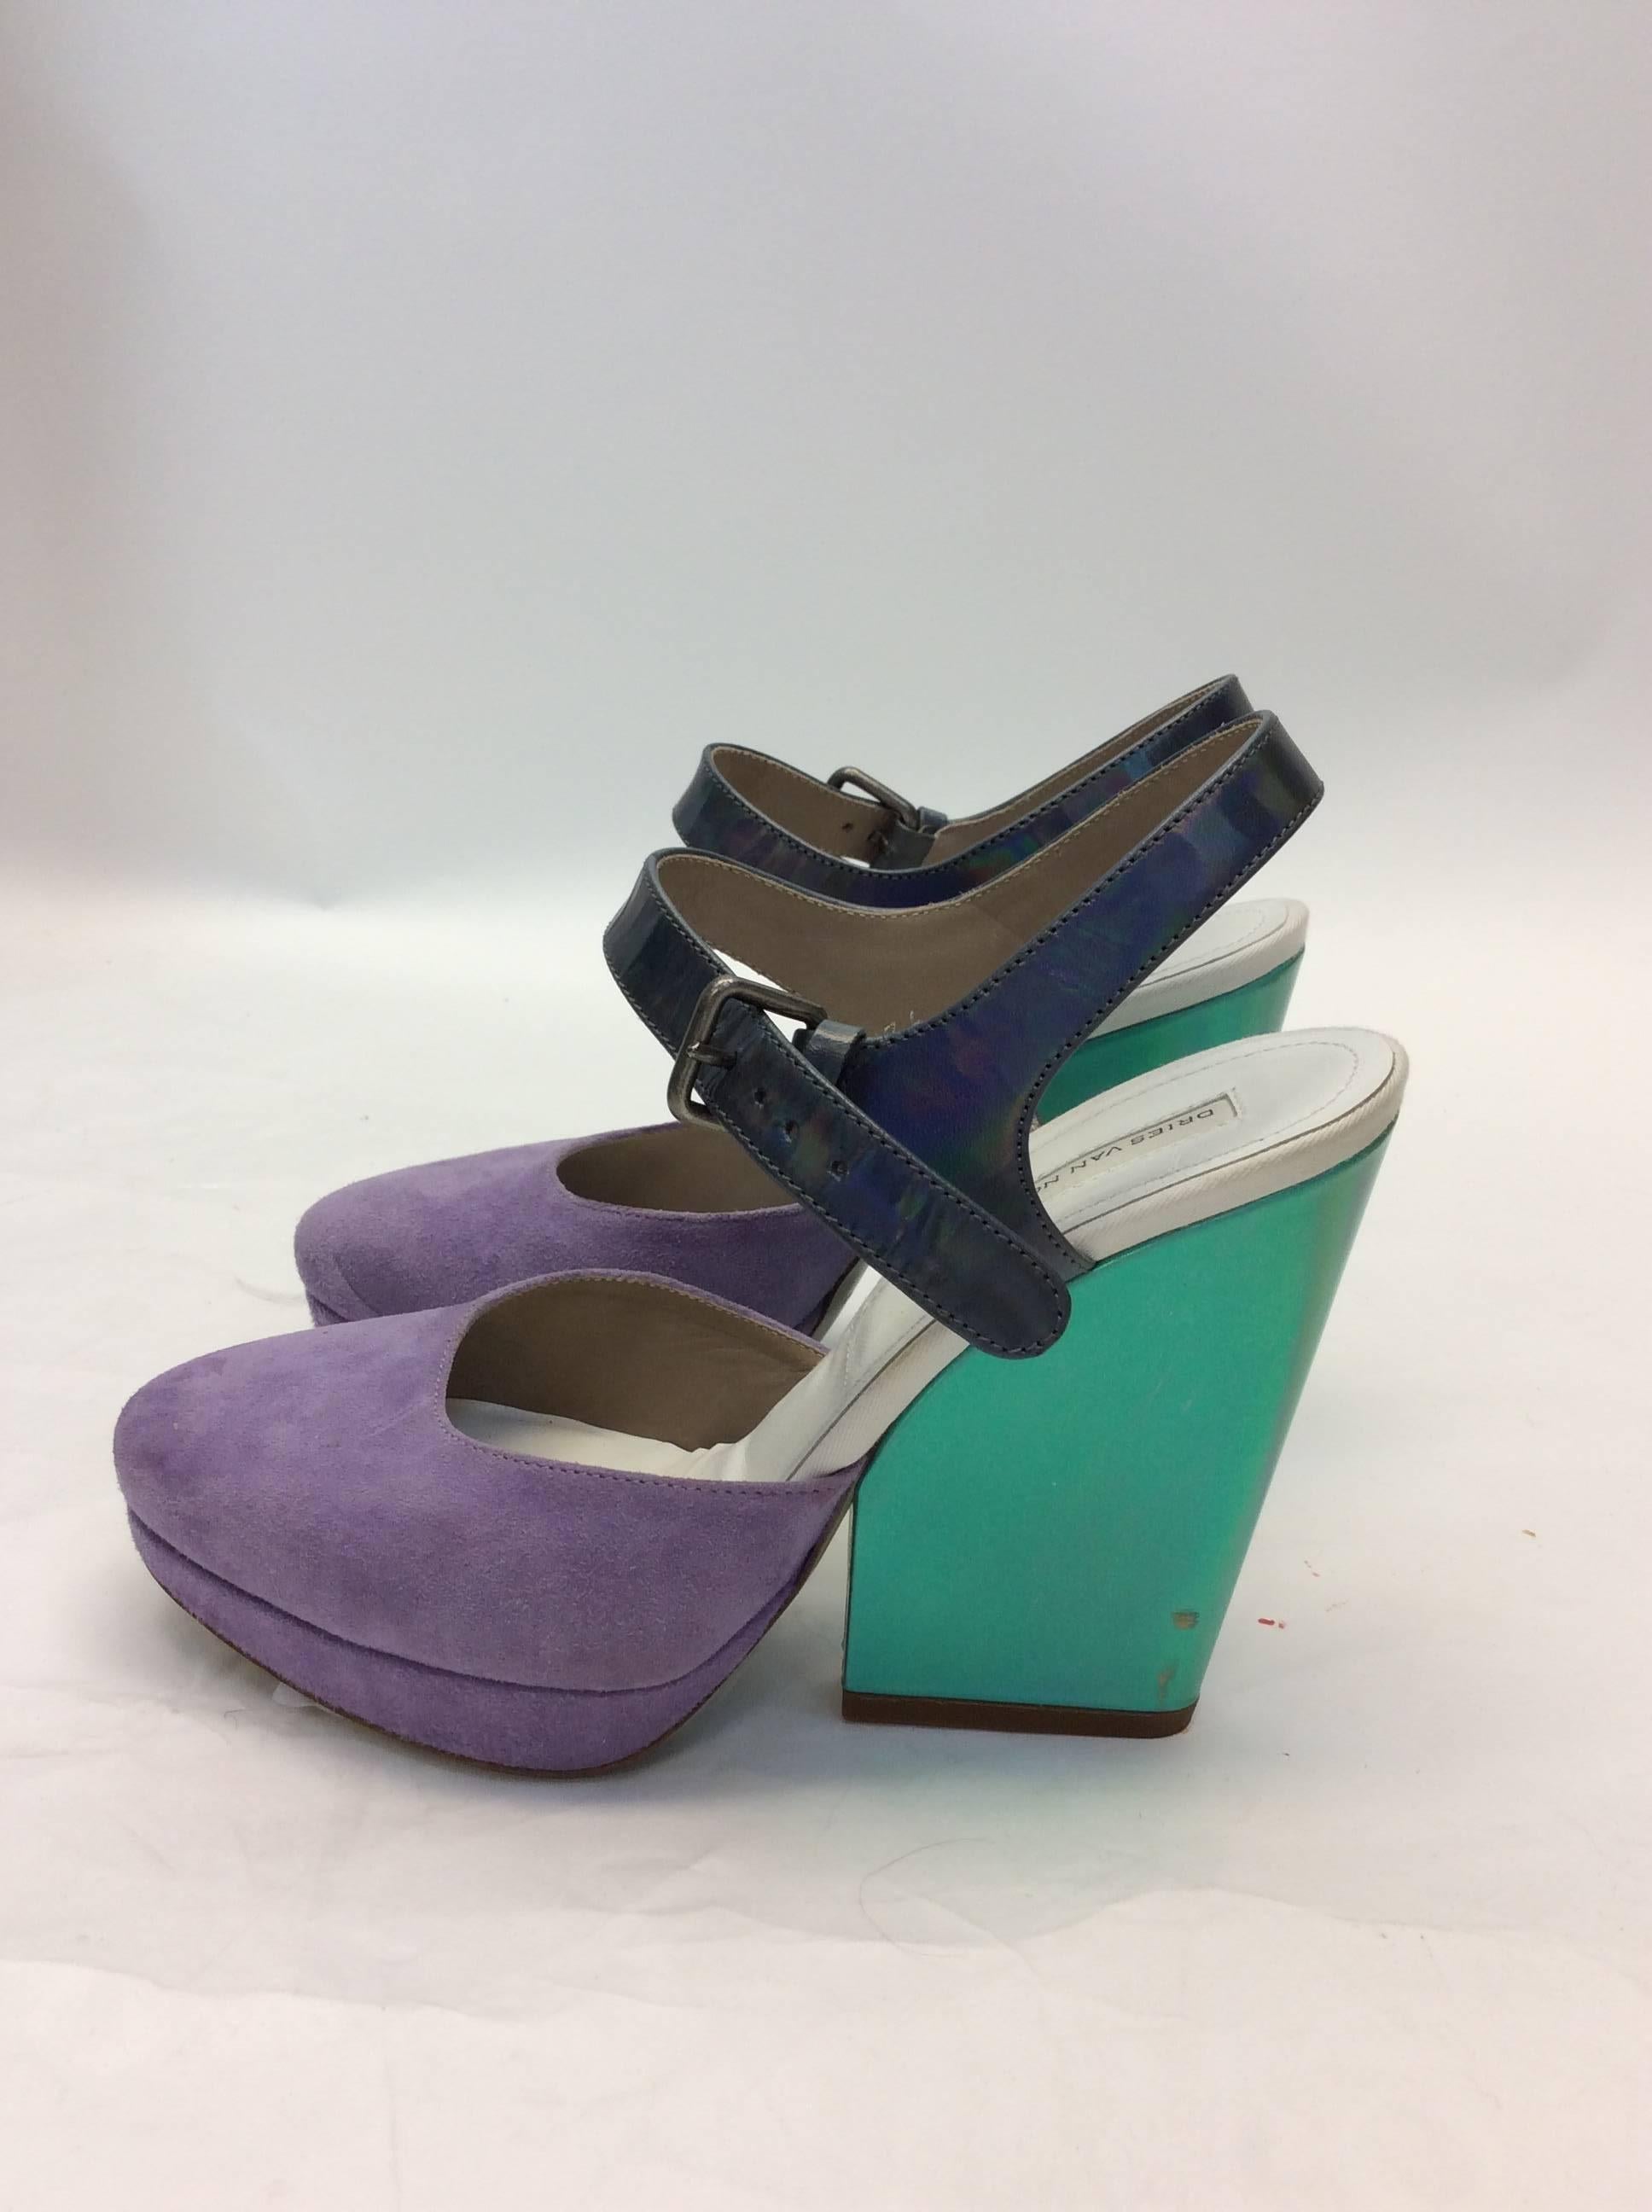 Dries Van Noten Suede Metallic Heels
Size 6
Original price: $545
Our price: $285
Blue metallic heel, suede lavender 
5.5 inch heel, 2.75 width
Features ankle strap
**Minor wear on heel, noted in photo